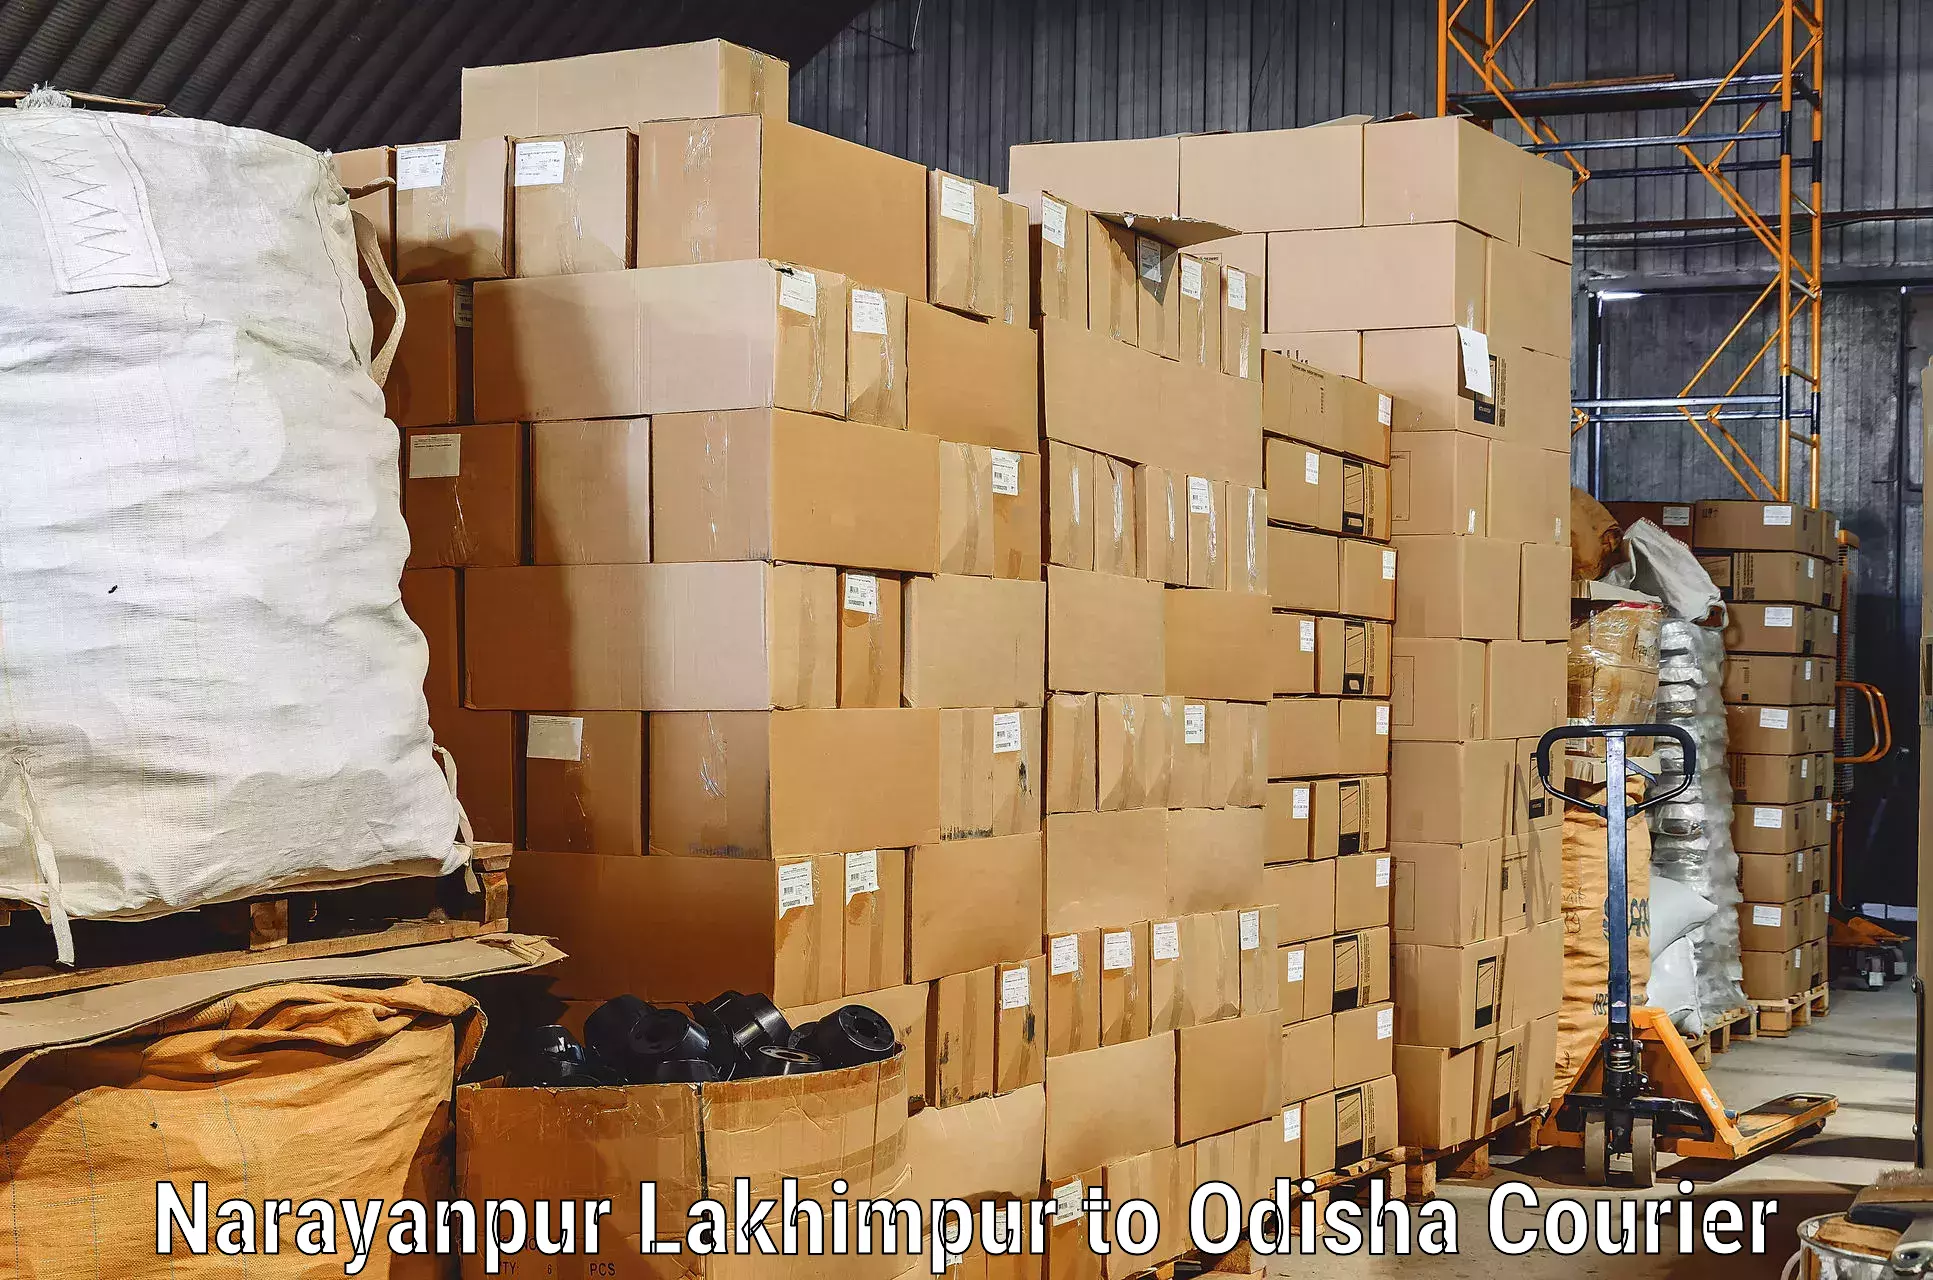 Furniture delivery service Narayanpur Lakhimpur to Paralakhemundi